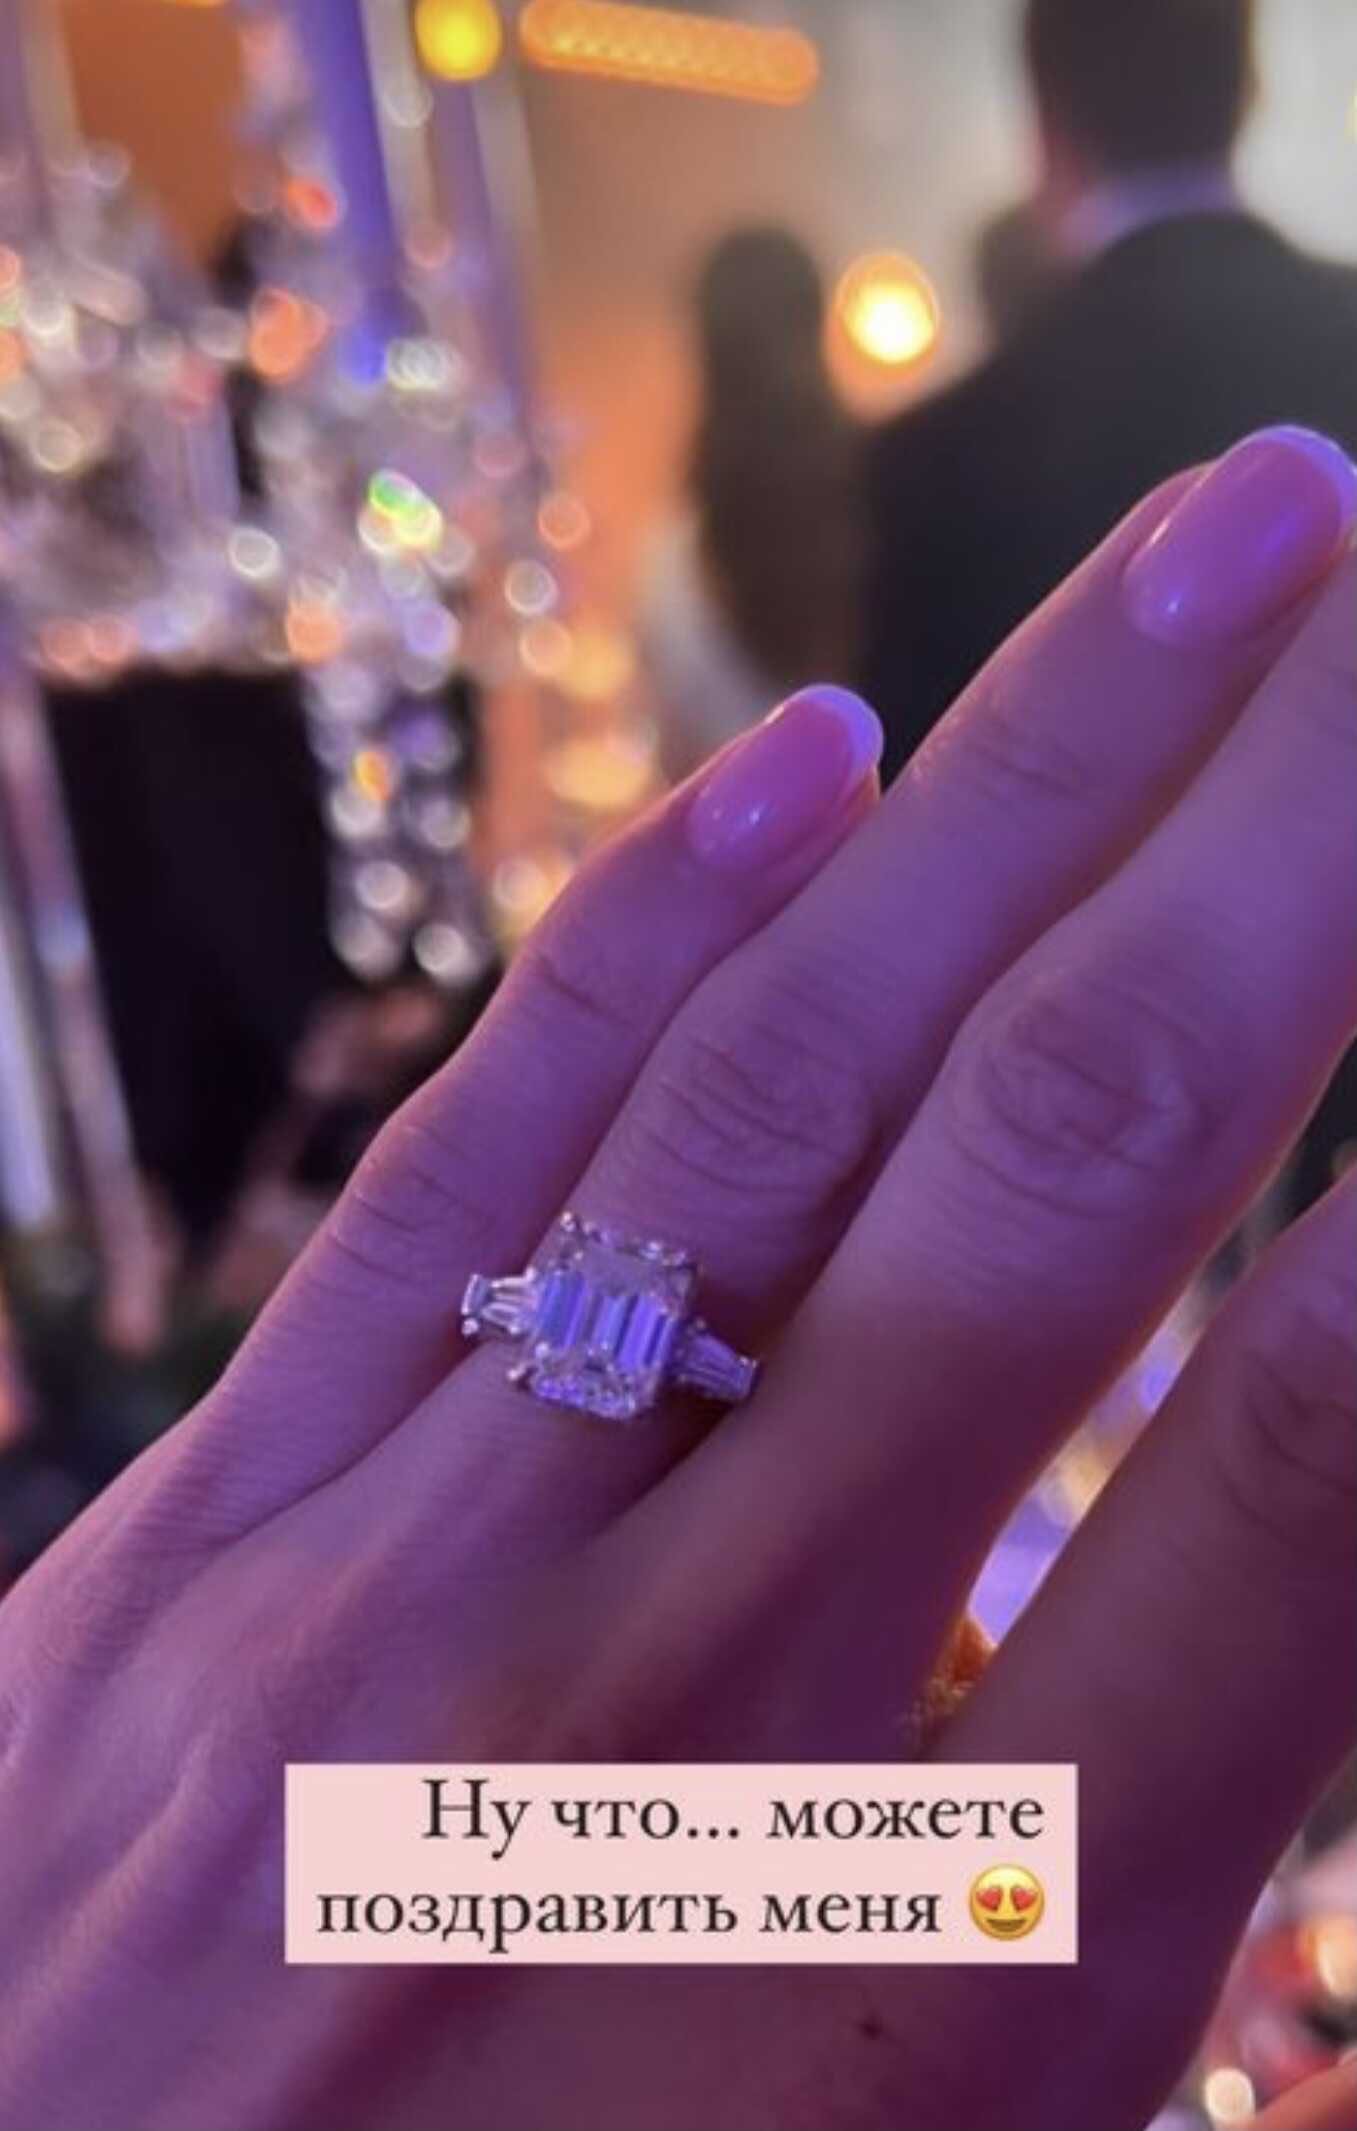 Виктория Боня показала кольцо на безымянном пальце